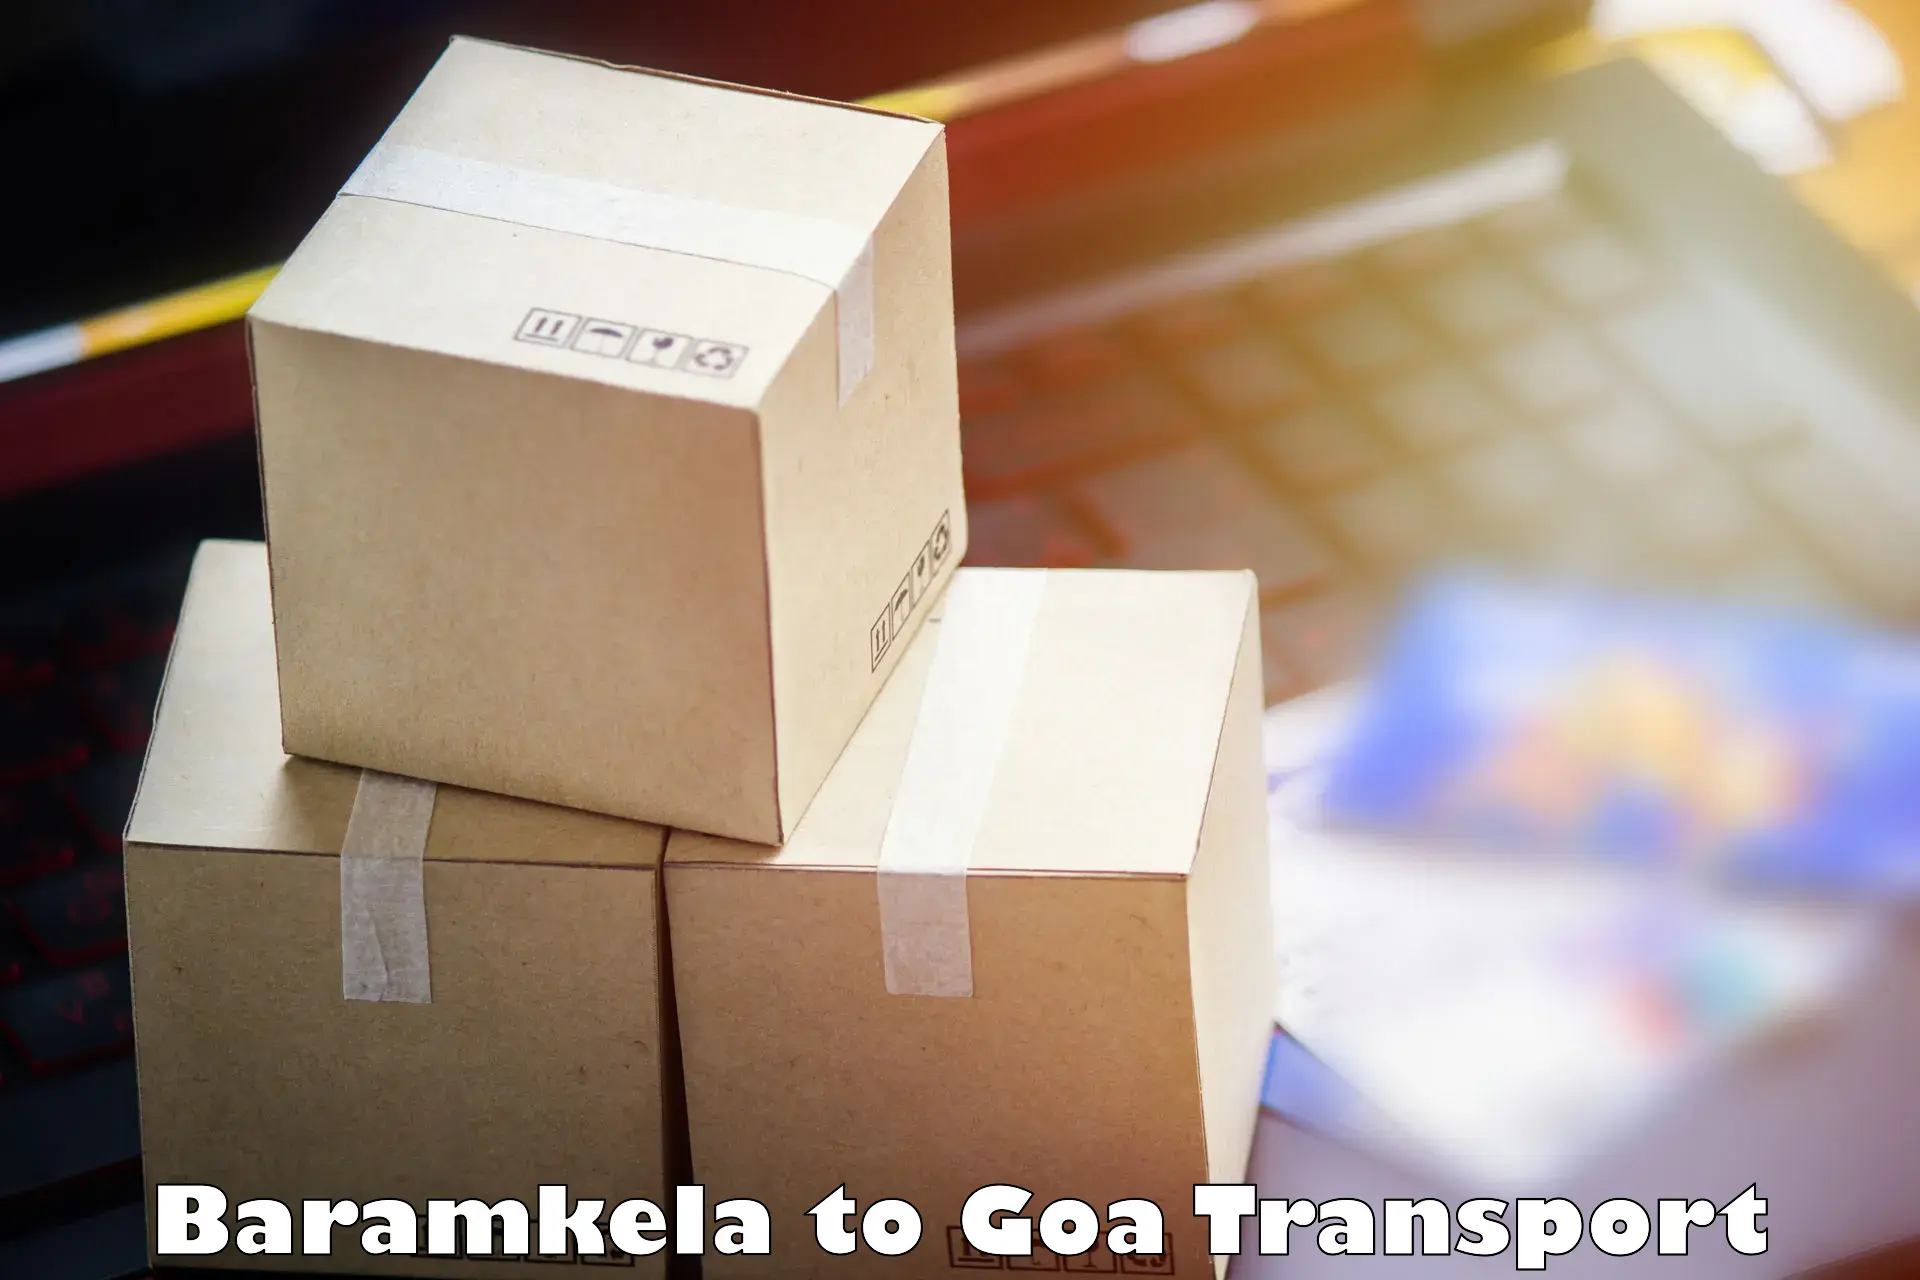 Commercial transport service Baramkela to Canacona